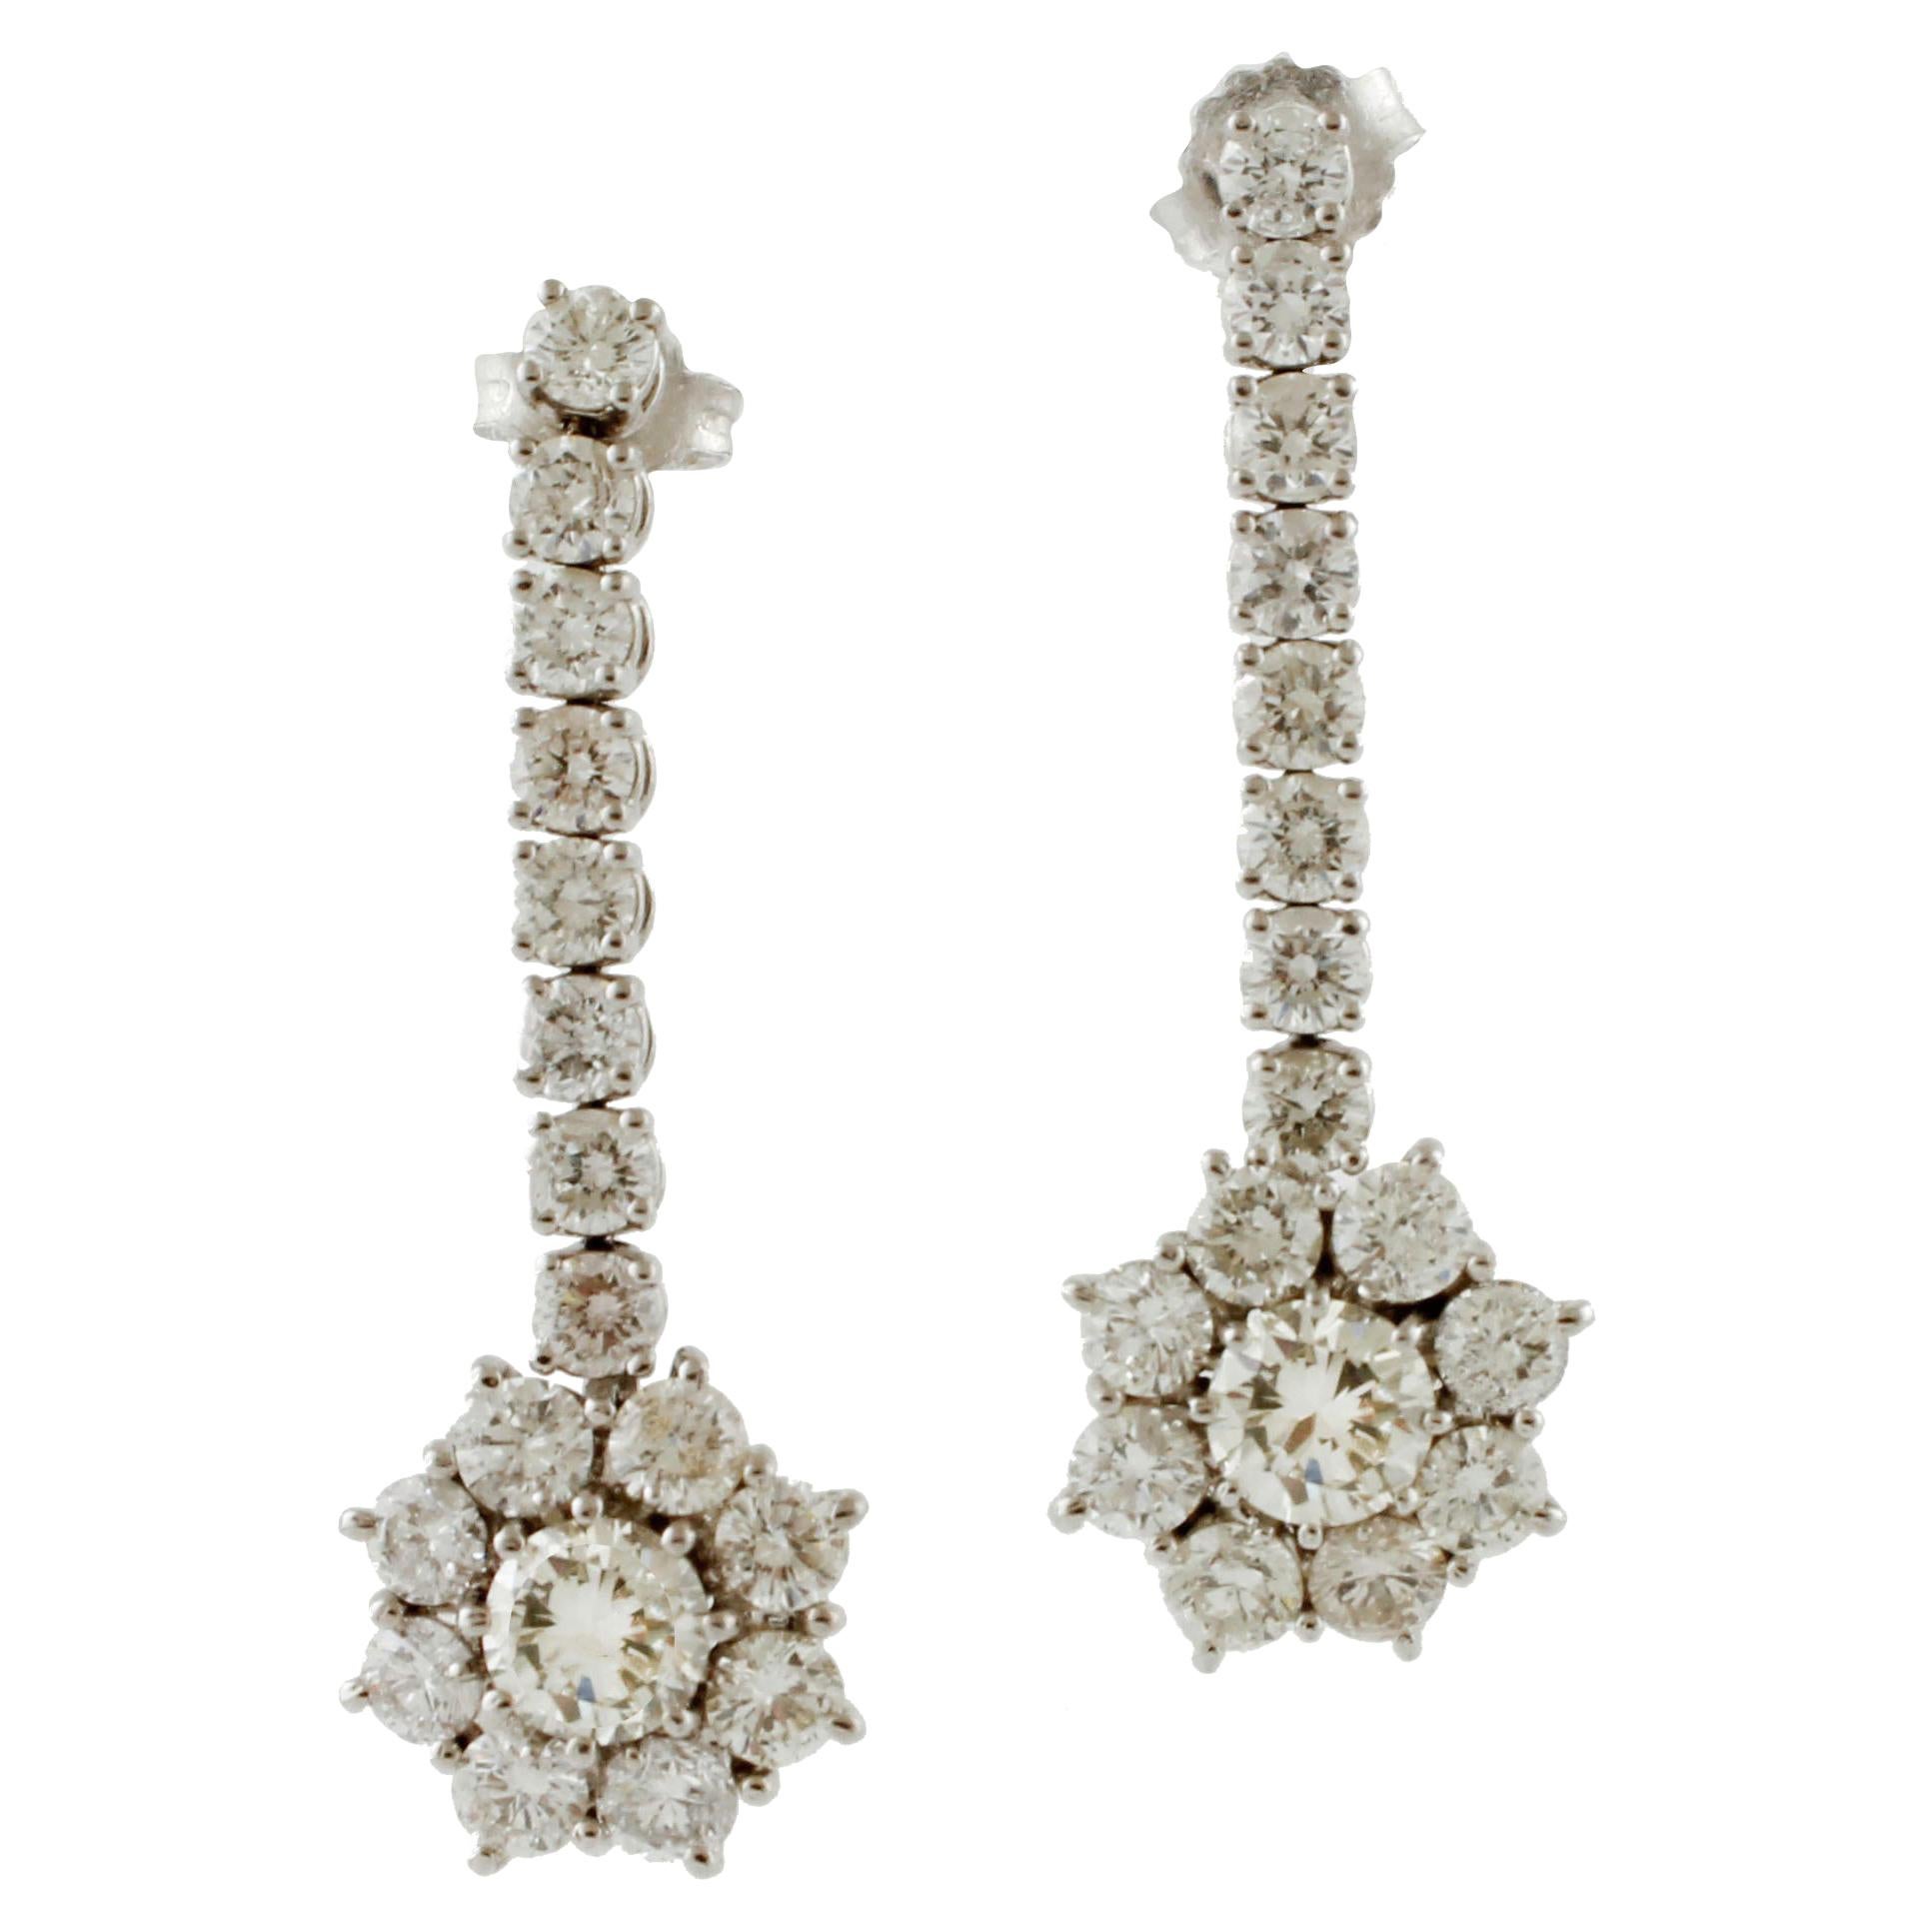 4.63 Carat White Diamonds, White Gold Flower Design Drop Earrings